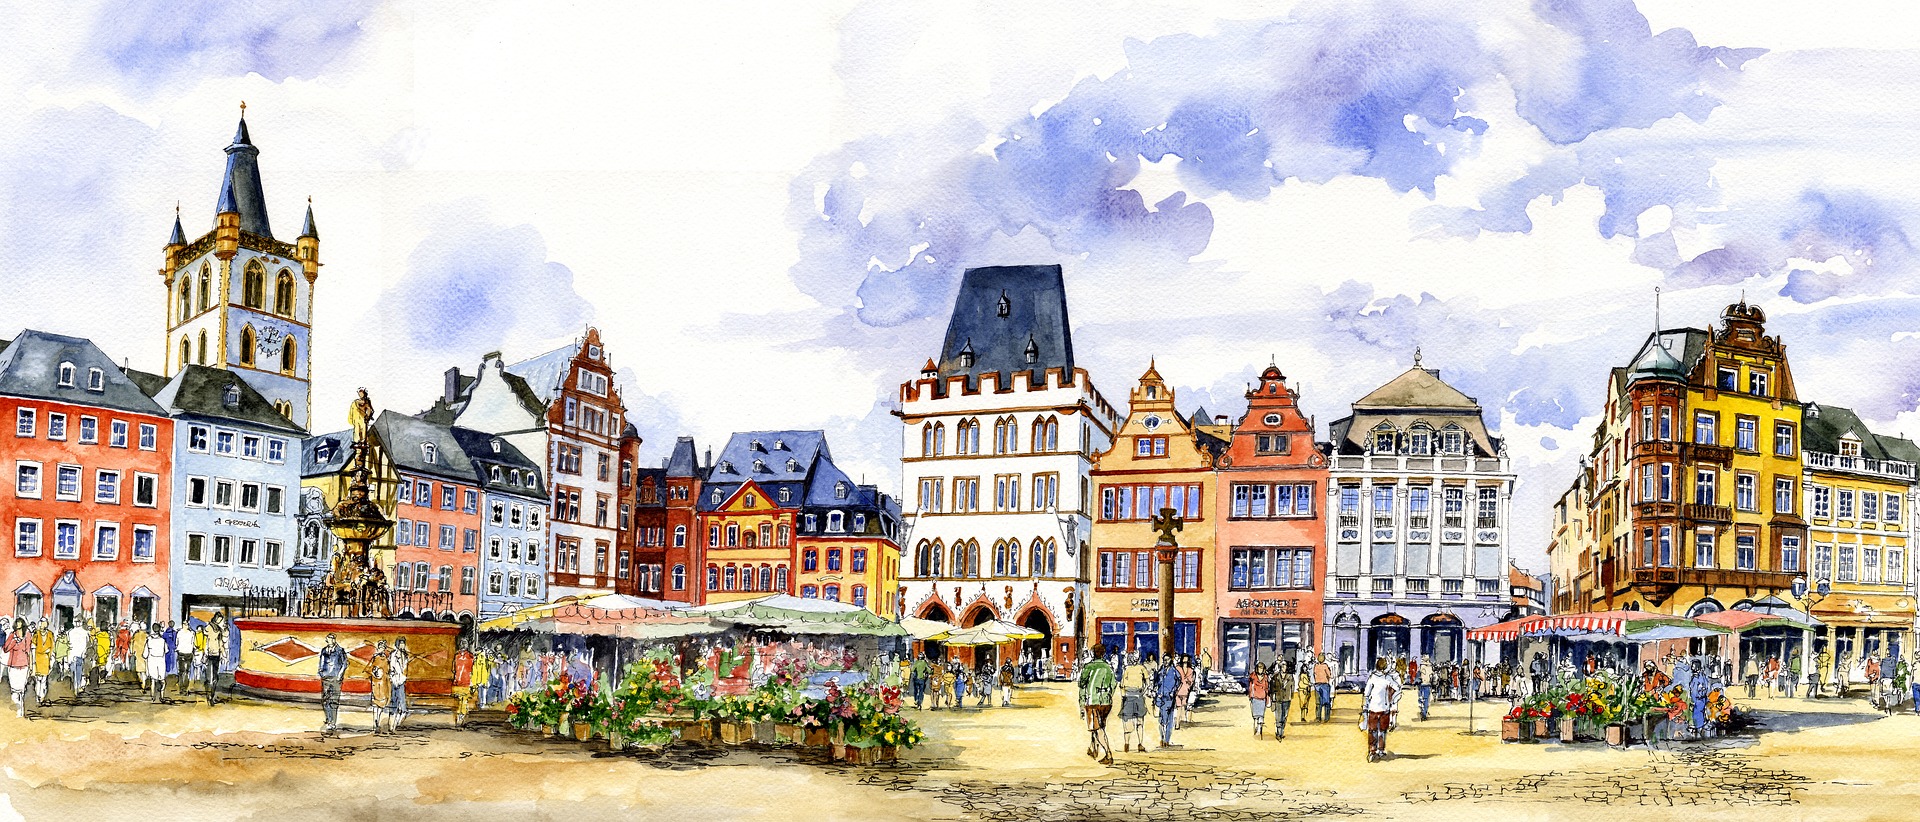 Trier Sehenswürdigkeiten Städtereise planen - Hotel ab 44,00€